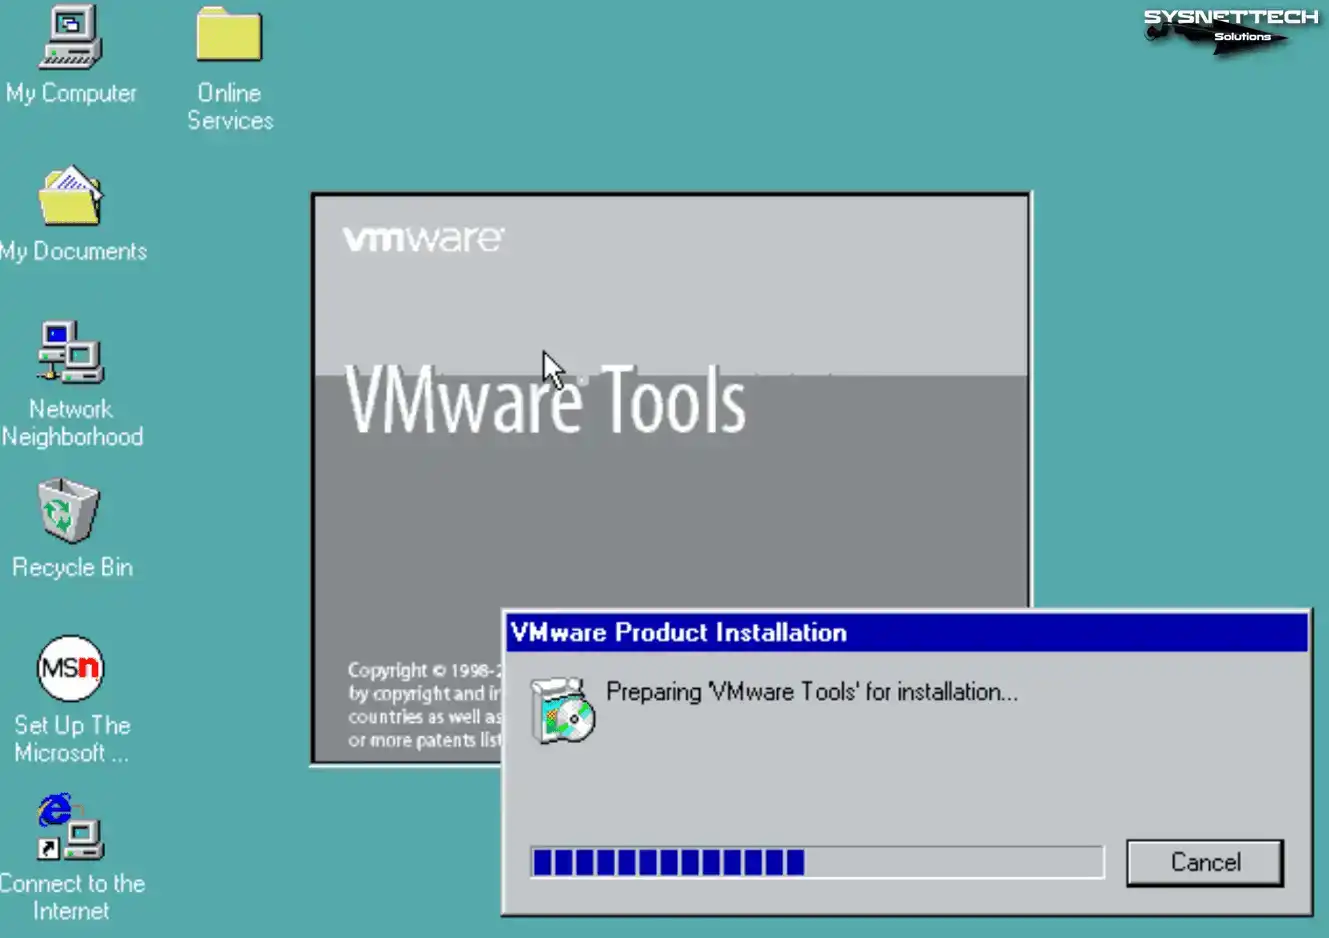 Preparing VMware Tools for Installation